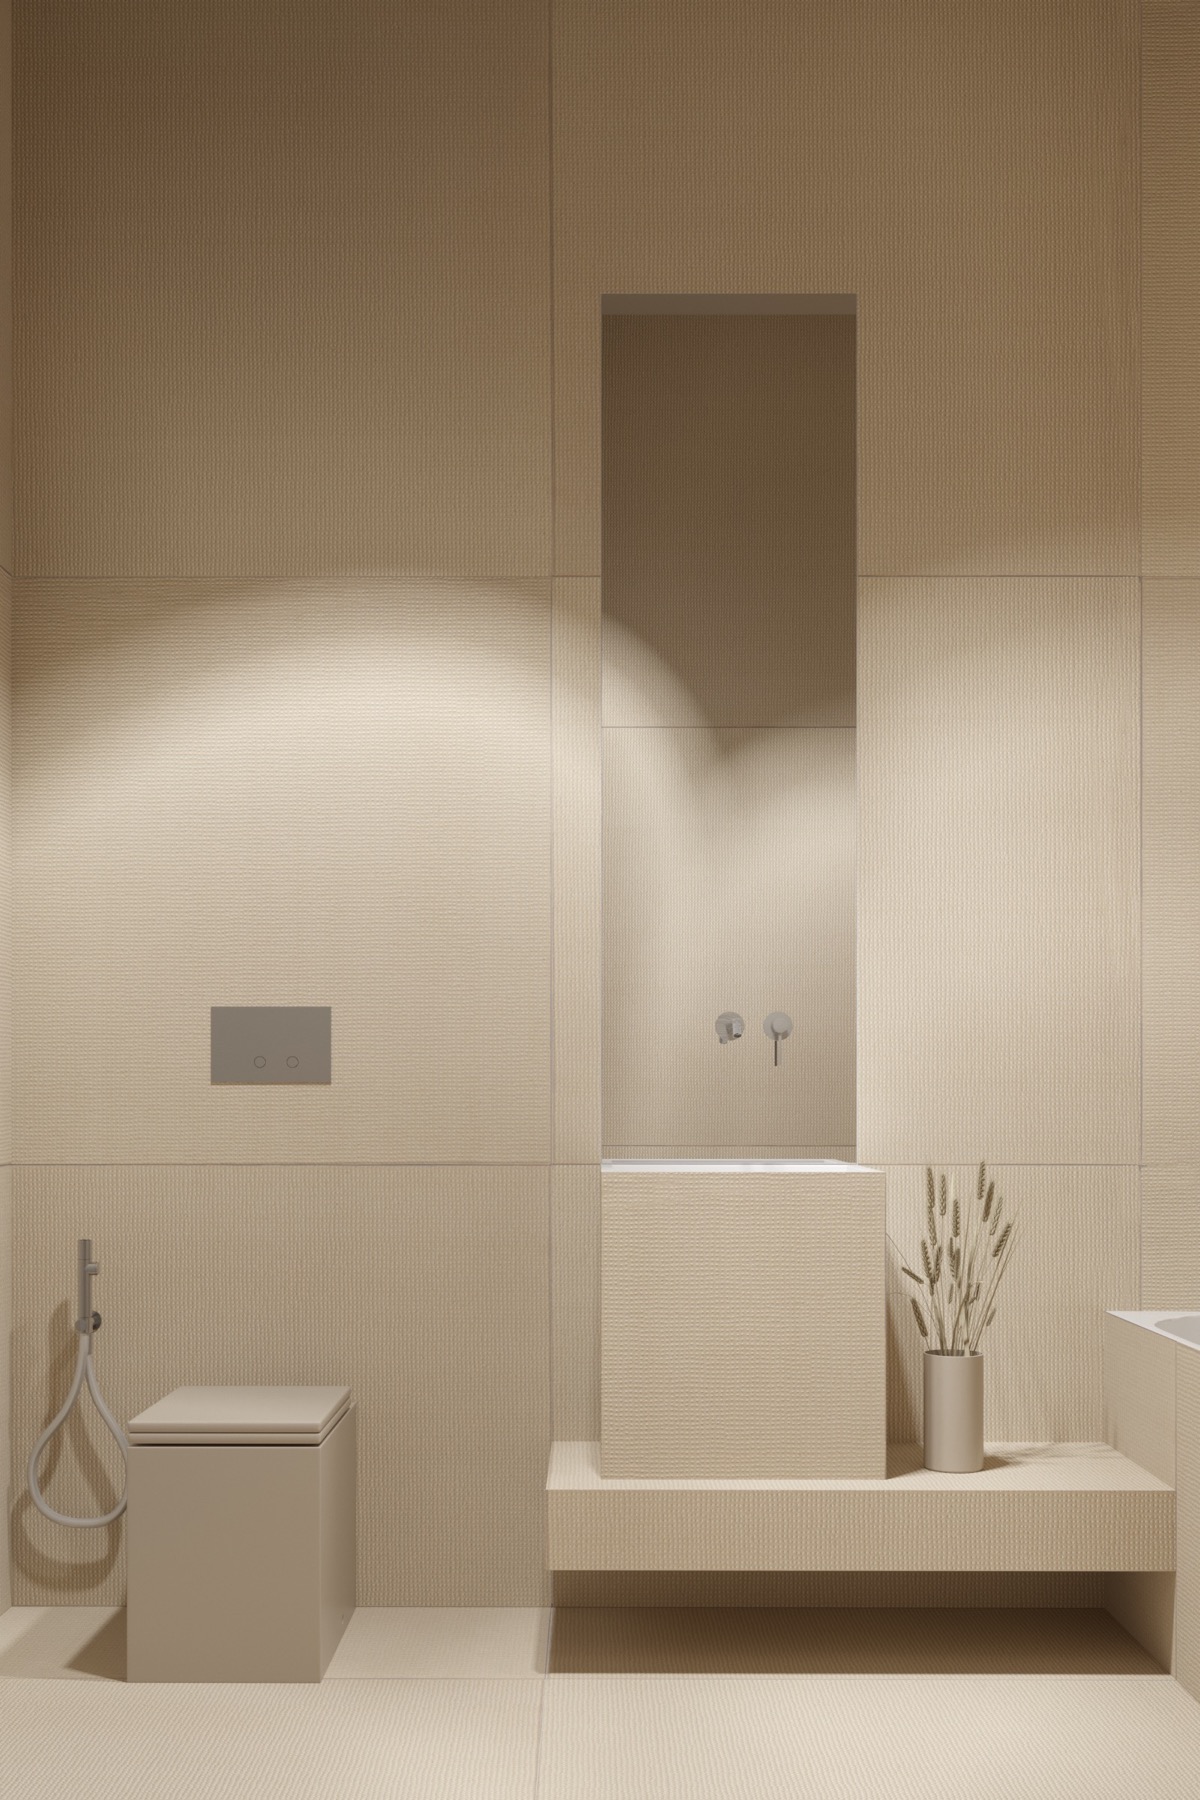 Bên cạnh màu trắng, tông beige này cũng được sử dụng nhiều khi nhắc đến phong cách tối giản. Phòng tắm này gần như đã đạt đến độ tối giản tuyệt đối với rất ít vật dụng được bày ra. Dù vậy thiết kế nội thất phòng tắm này vẫn cực thu hút thị giác.